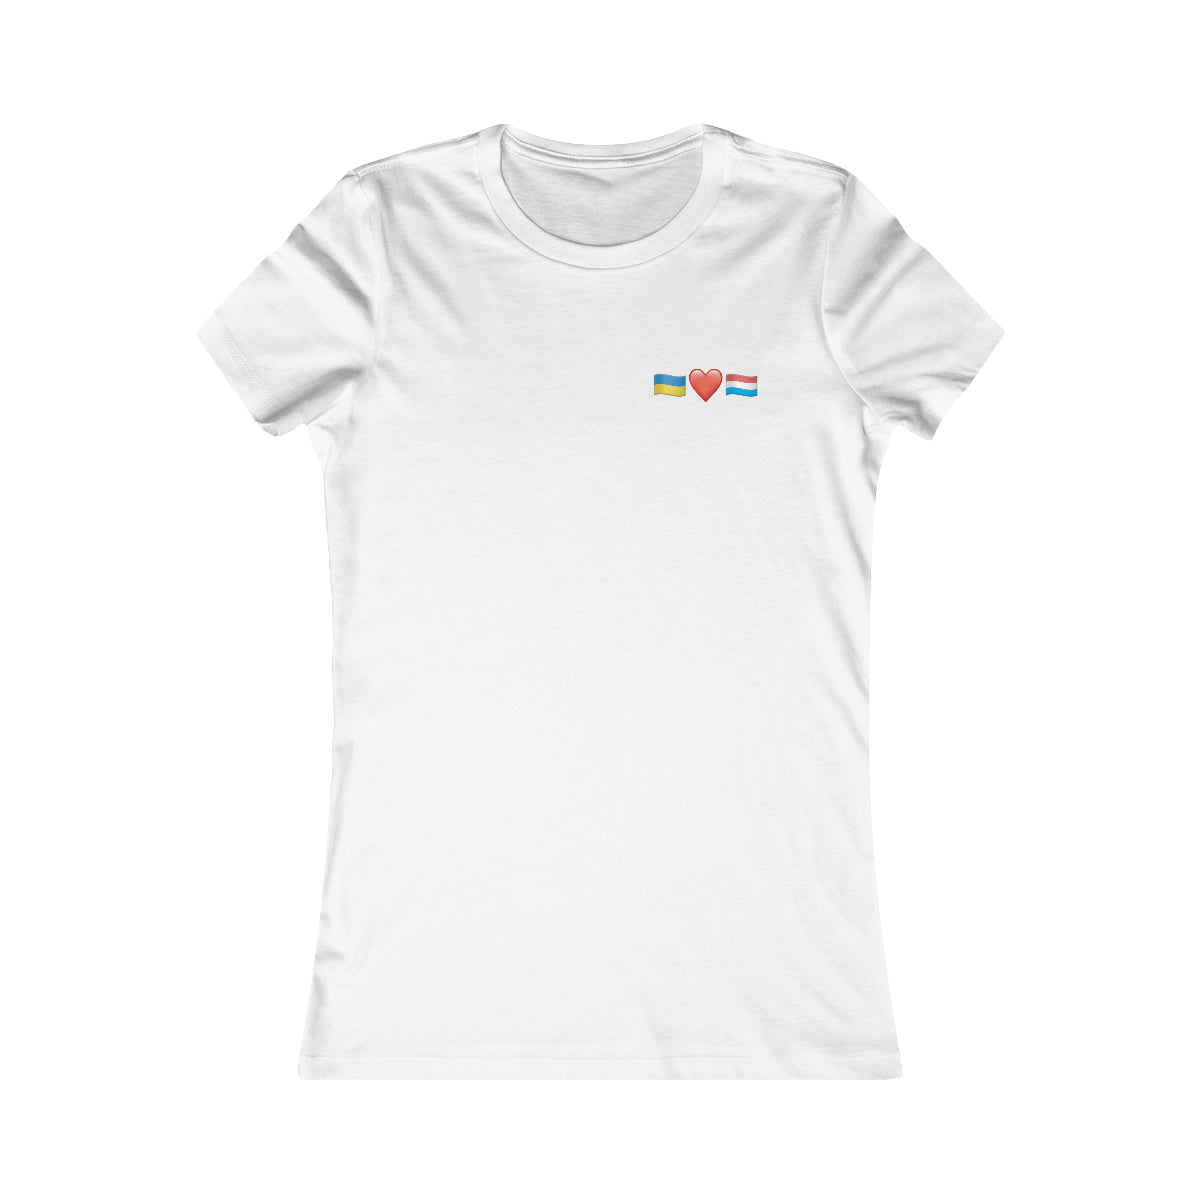 Luxembourg's Support Minimalistic - T-shirt préféré des femmes